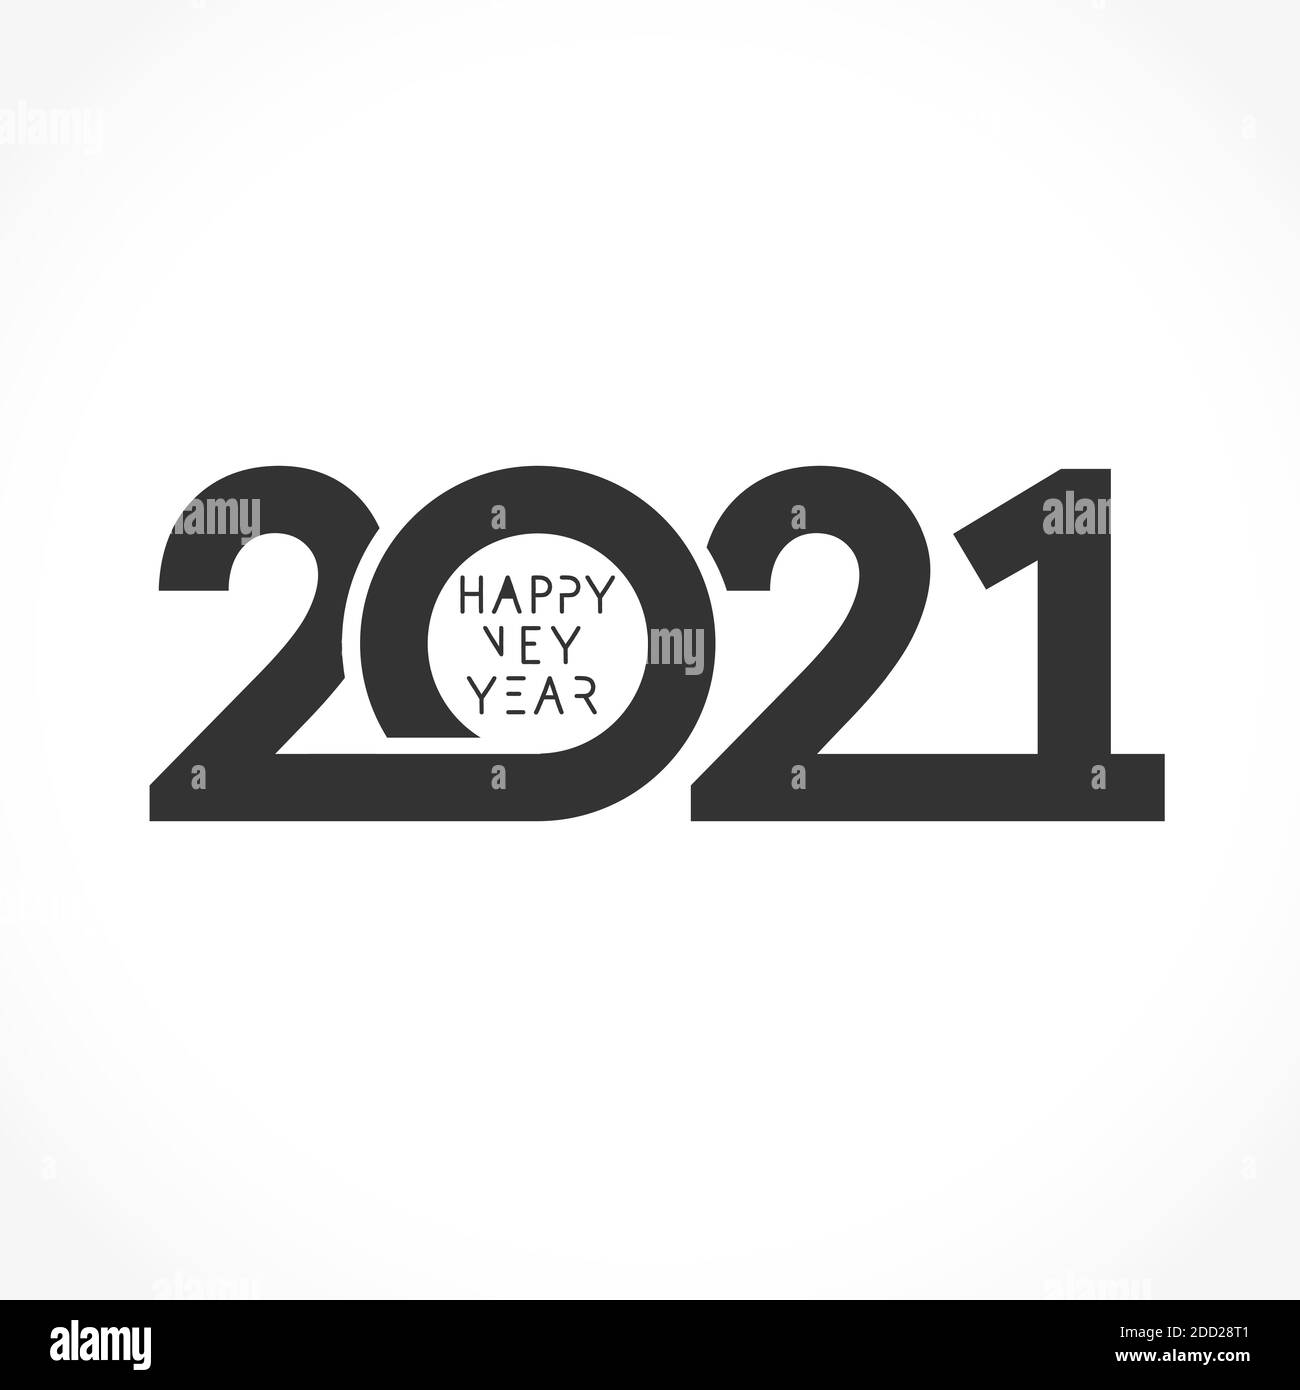 2021 semplice design bianco e nero tondo Xmas. I numeri vettoriali realistici 20 21 segno e concetto di calligrafia per la copertina, poster o banner delle vacanze Illustrazione Vettoriale